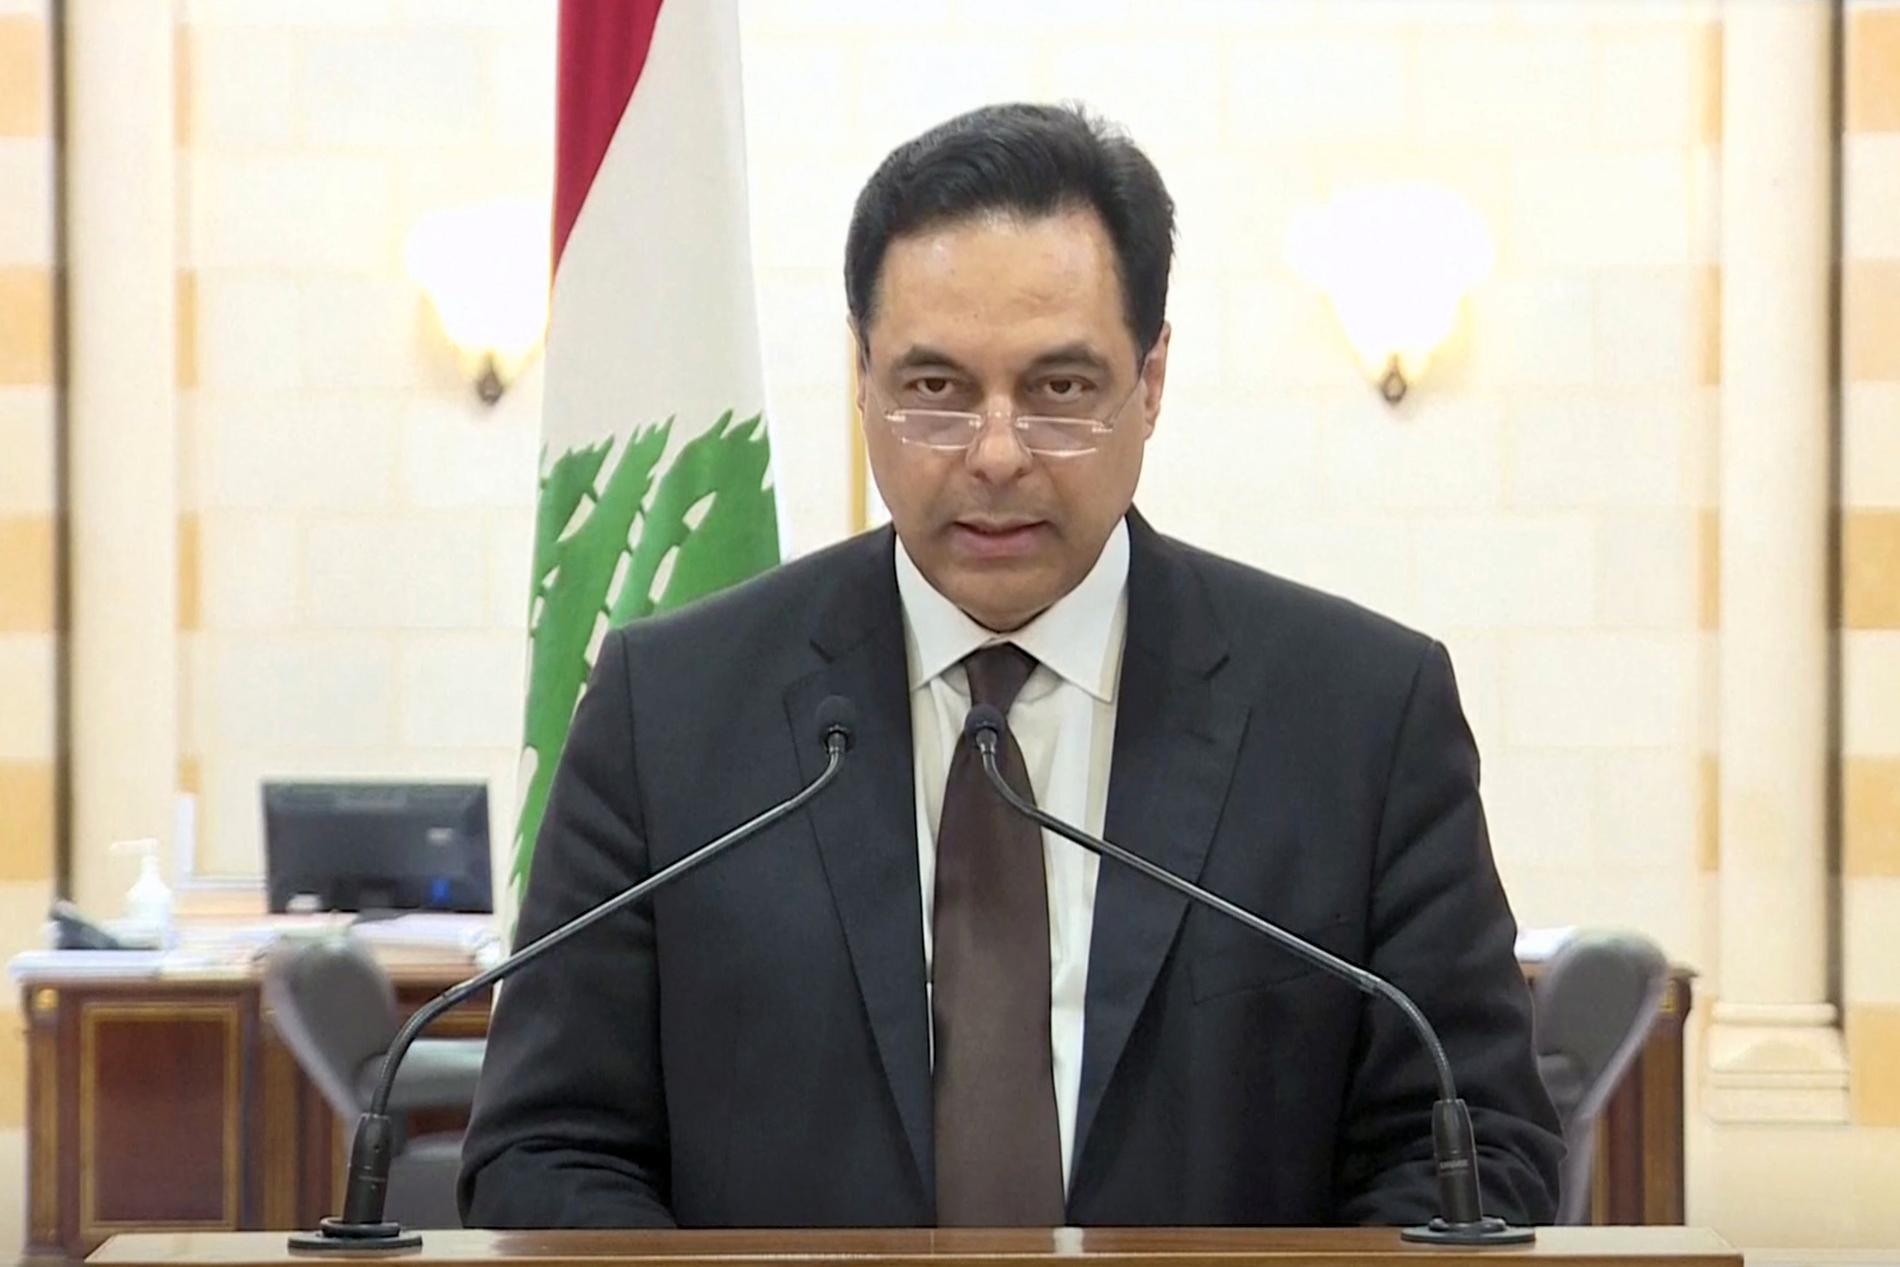 Libanons premiärminister Hassan Diab meddelar att han och resten av regeringen avgår.